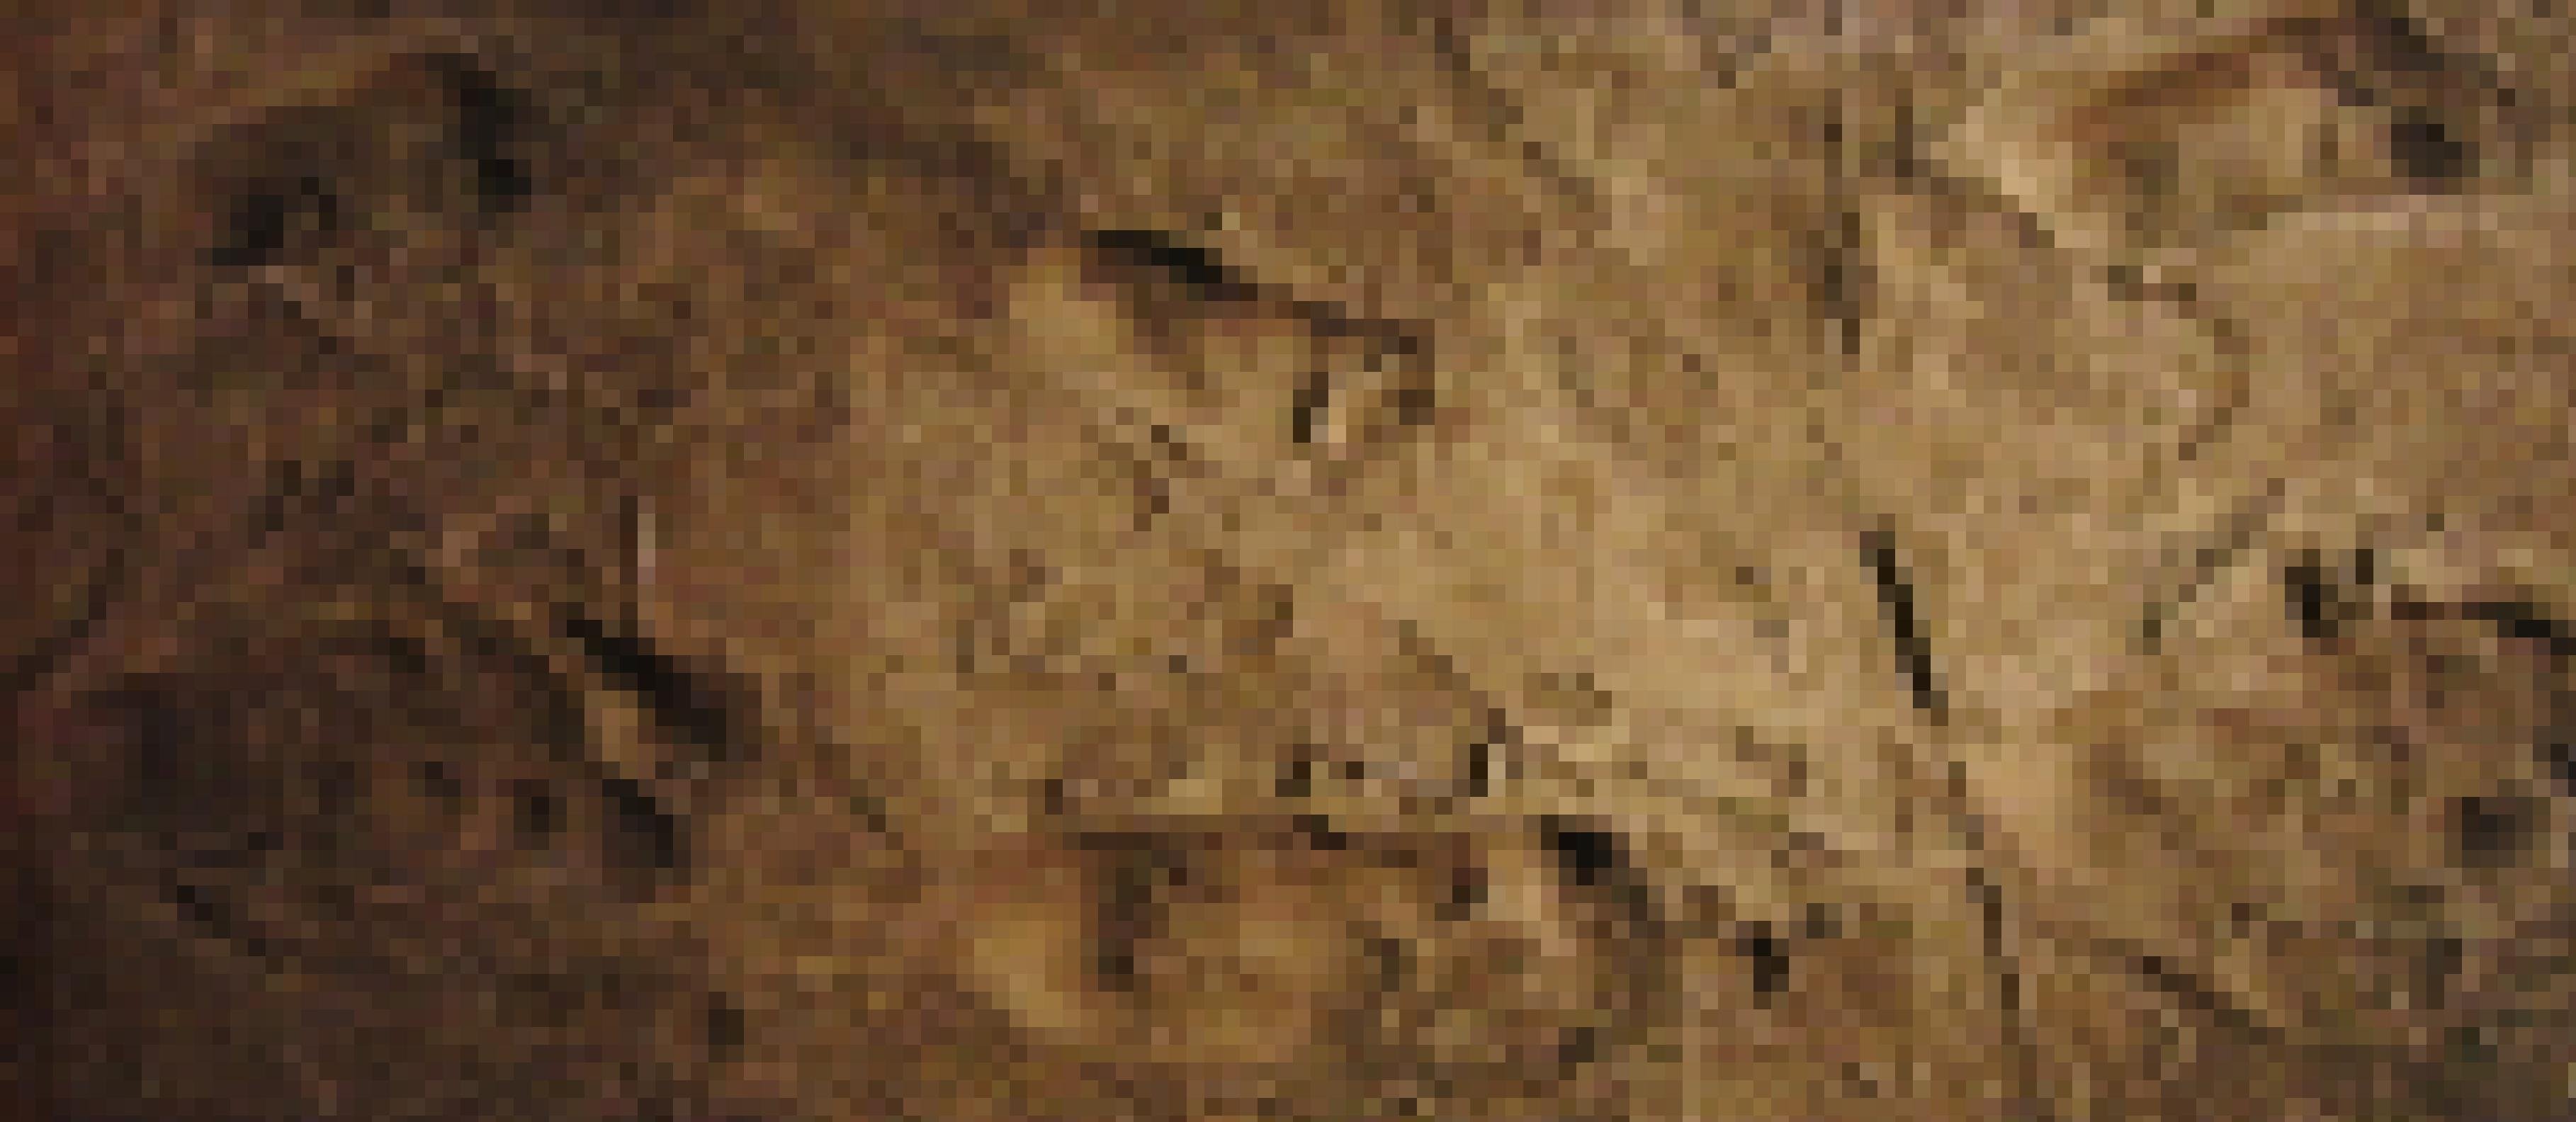 Zu sehen sind eingedrückte Fußspuren auf einem braunen Untergrund. Es handelt sich um die 3,6 Millionen Jahre alten versteinerten Fußabdrücke von Vormenschen der Art Australopithecus afarensis – hier als Nachbildung des nationalen Museums für Natur und Wissenschaft in Tokio. Die in vulkanischer Asche hinterlassenen Spuren beweisen, dass die Vormenschen bereits auf zwei Beinen liefen.